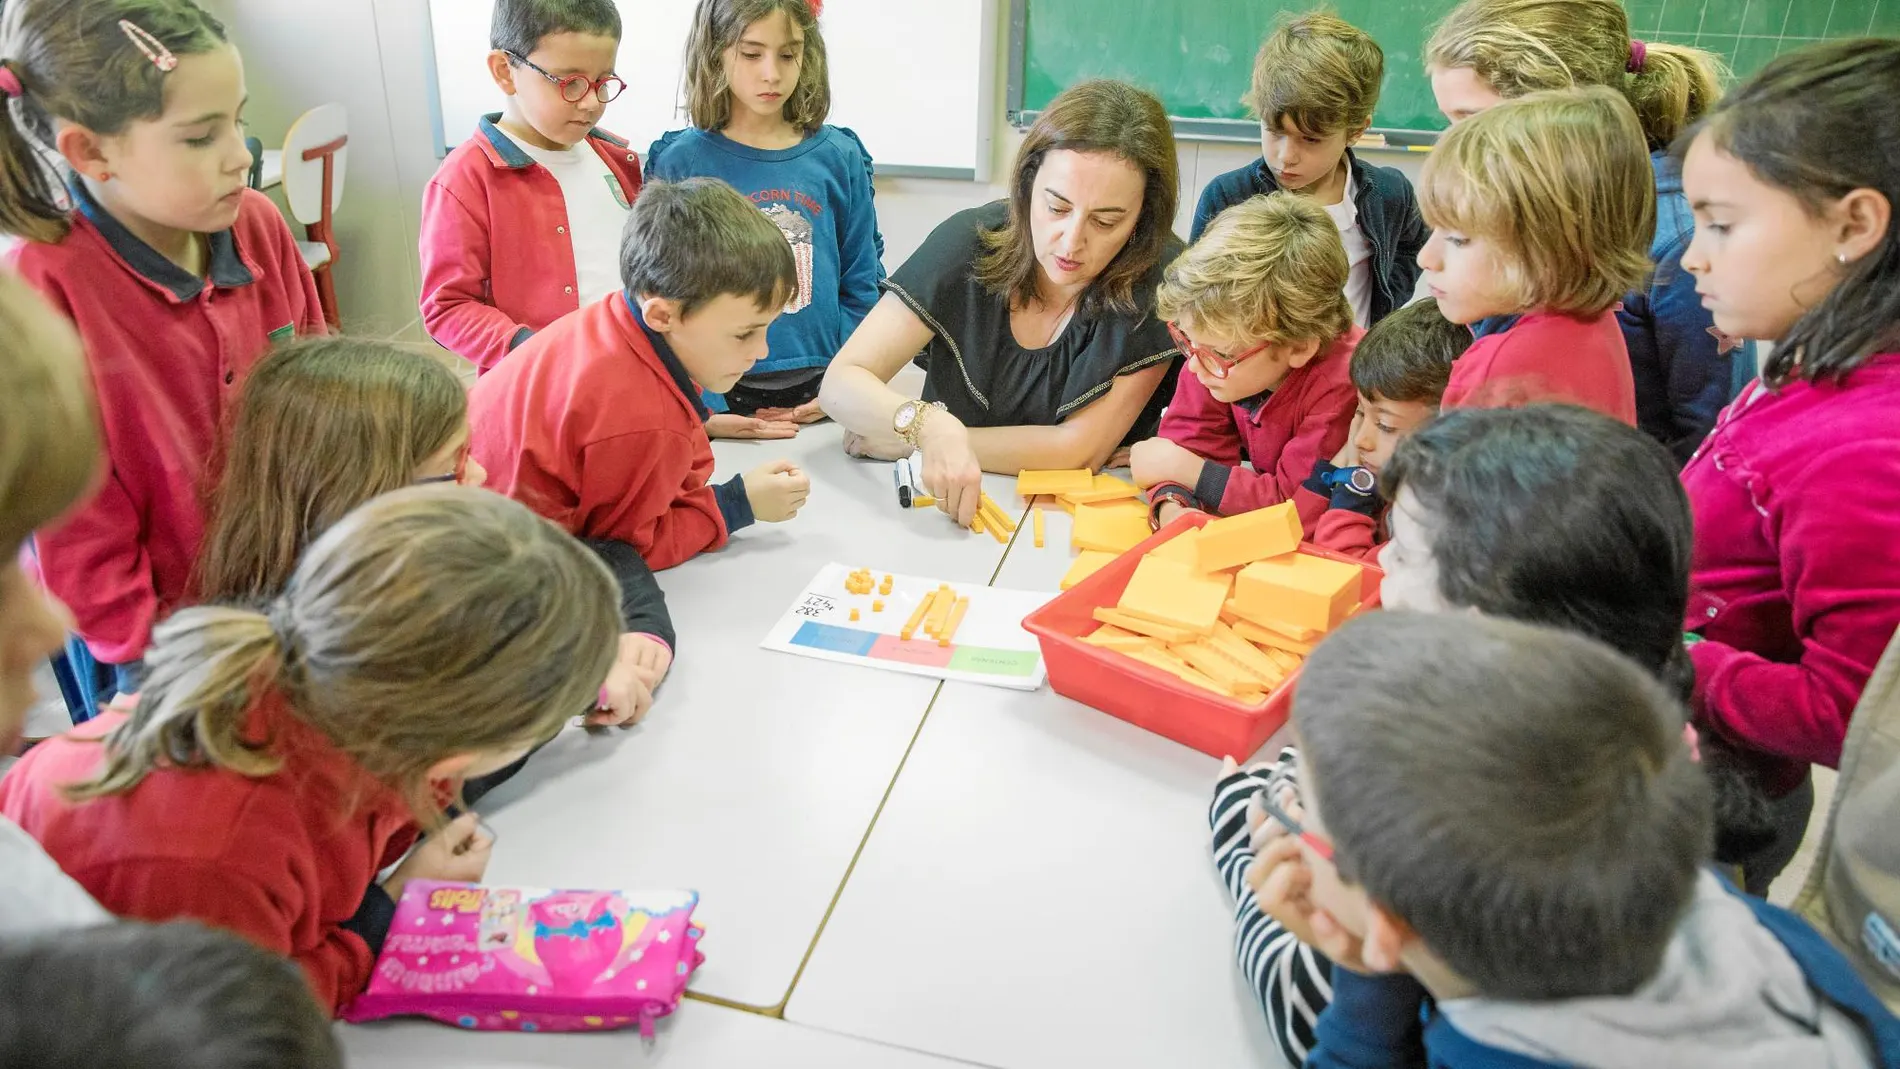 Los alumnos de 3º de Primaria del colegio Gabriela Mistral aprenden matemáticas de manera lúdica. Utilizan tablas de valor posicional para entender la parte abstracta de la materia